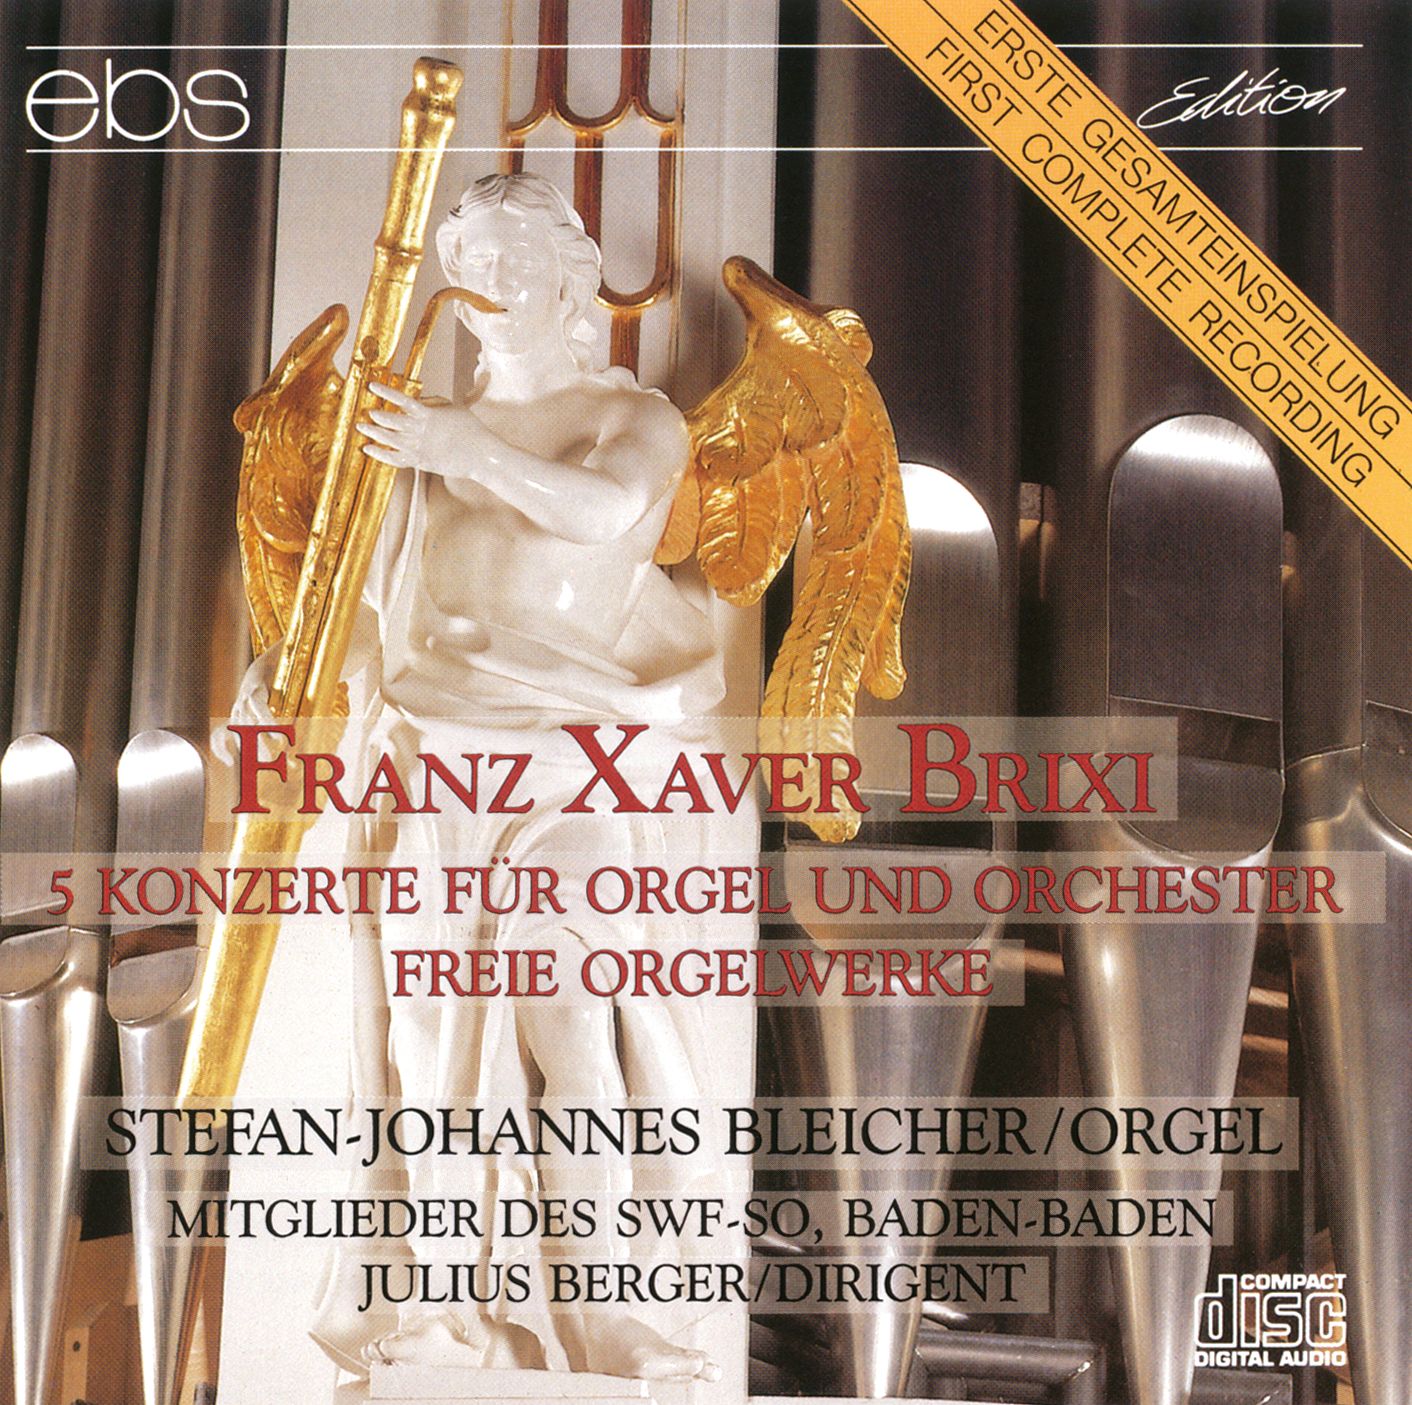 Franz Xaver Brixi - Orgelkonzerte